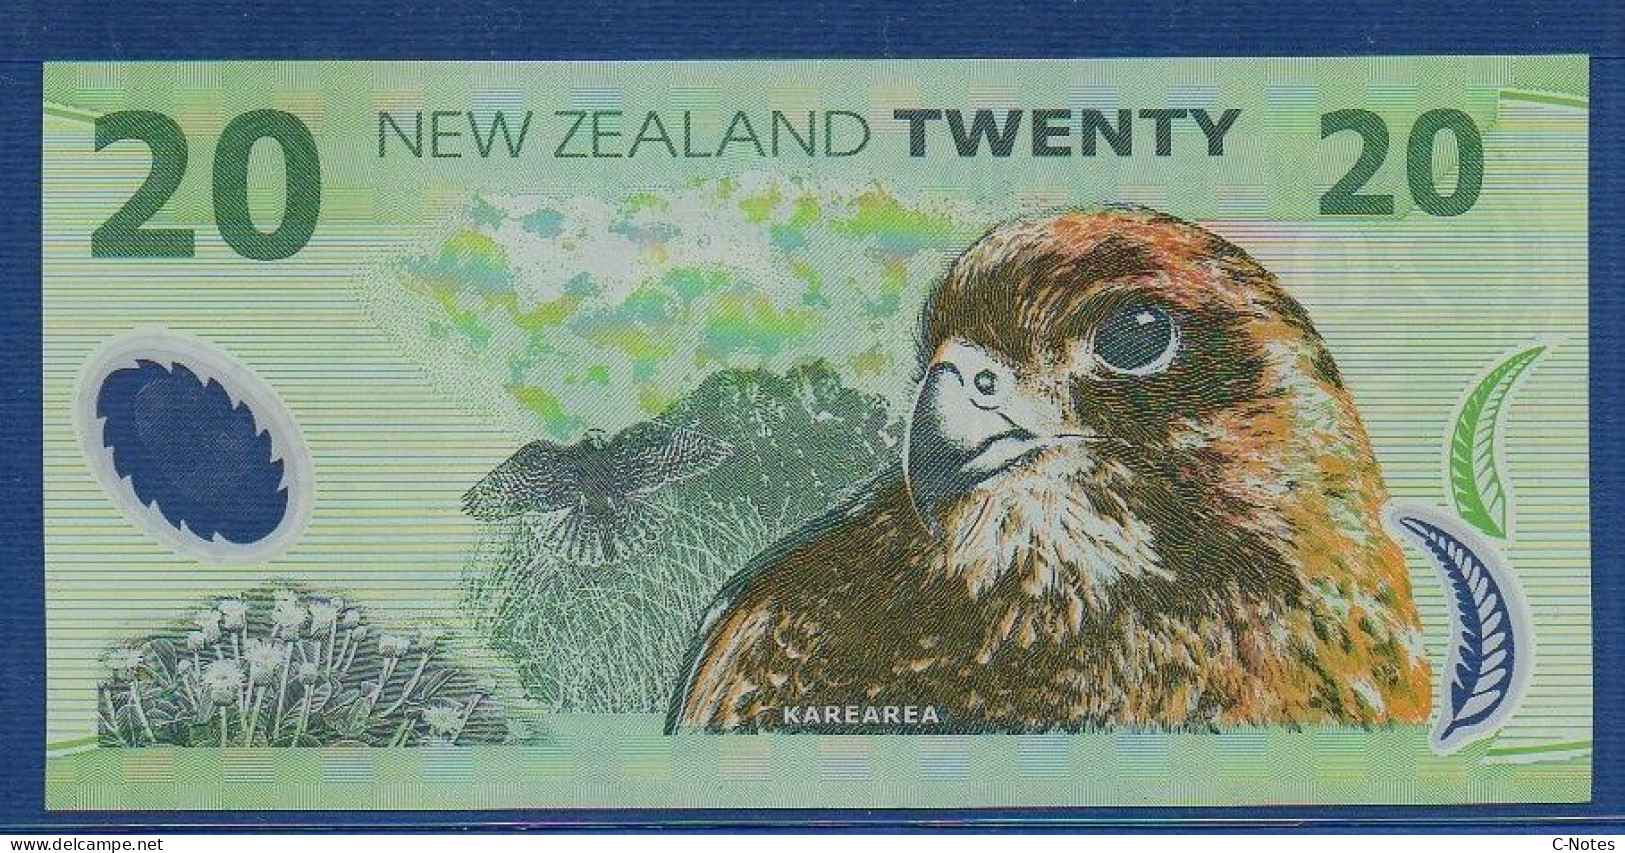 NEW ZEALAND  - P.187a – 20 Dollars 1999 UNC, S/n BM99 925526 - Neuseeland